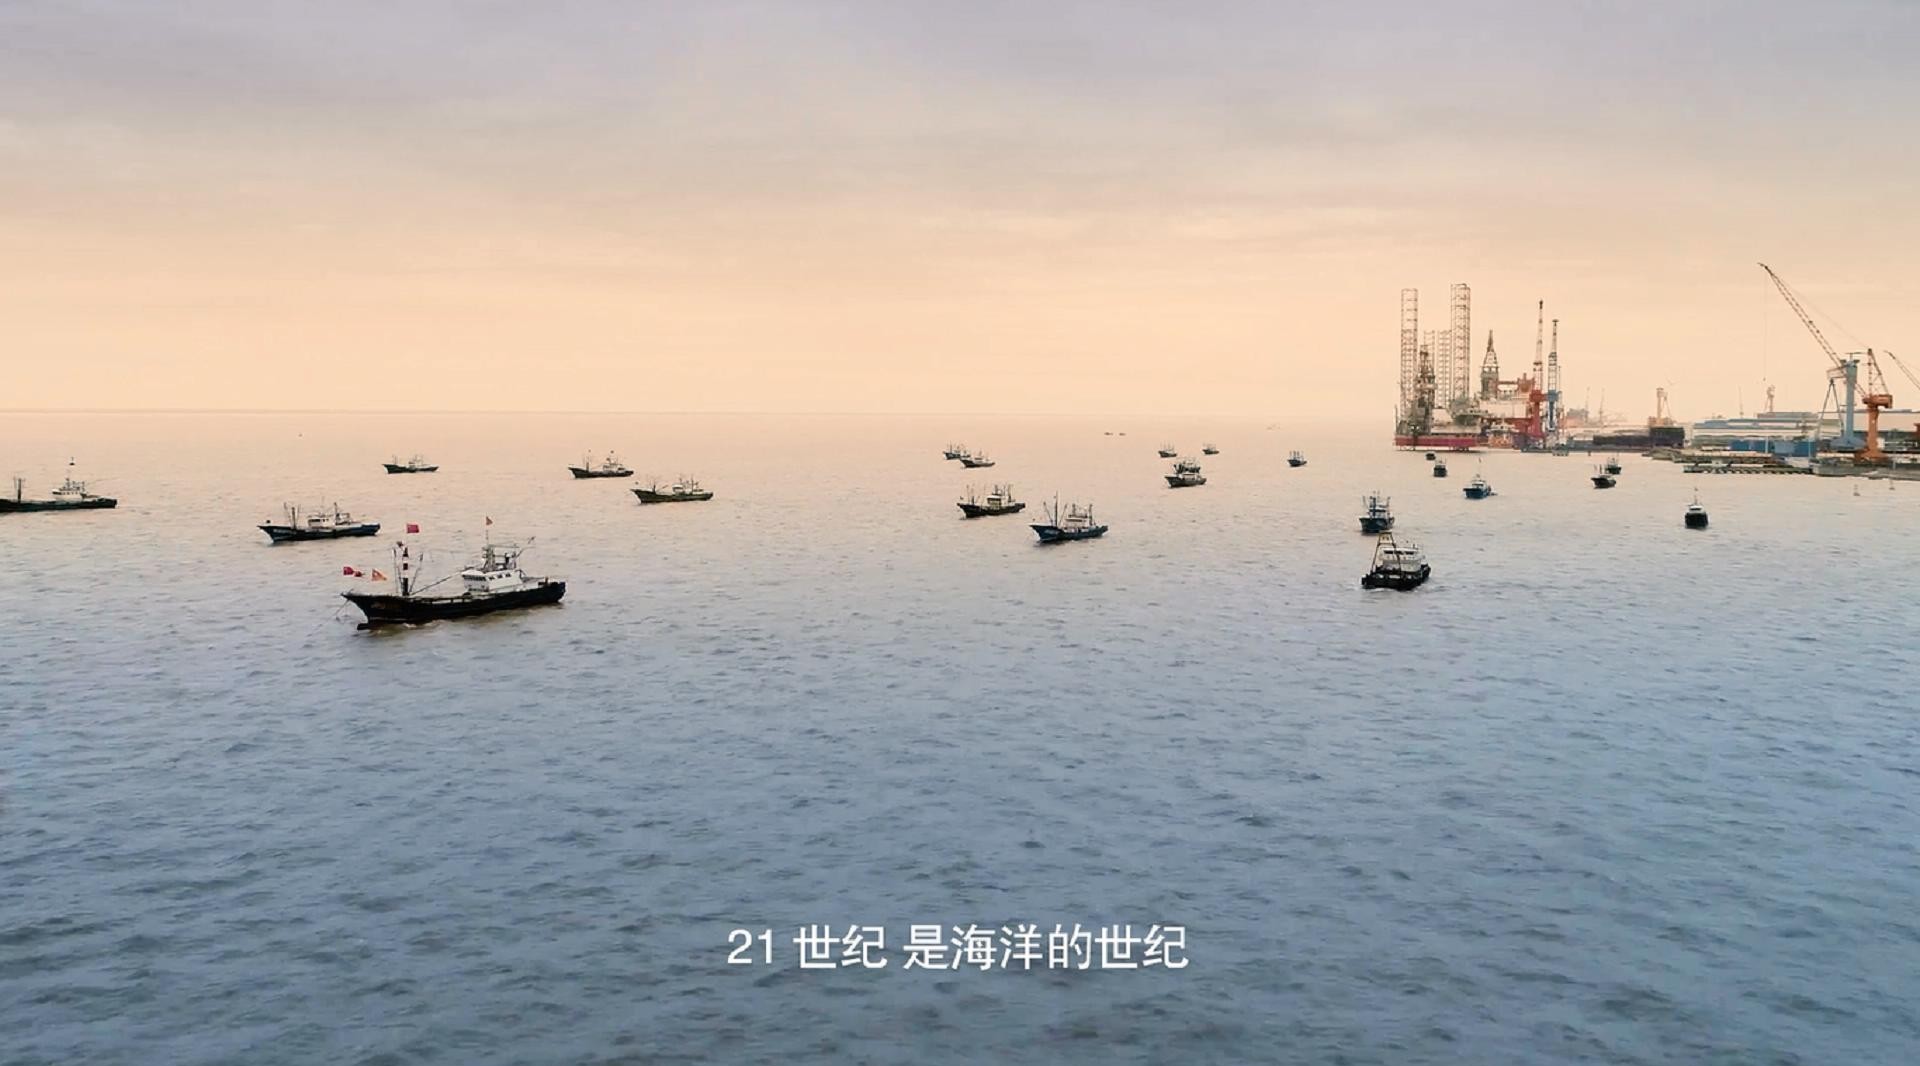 江苏省海洋渔业局沿海经济调查汇报片 